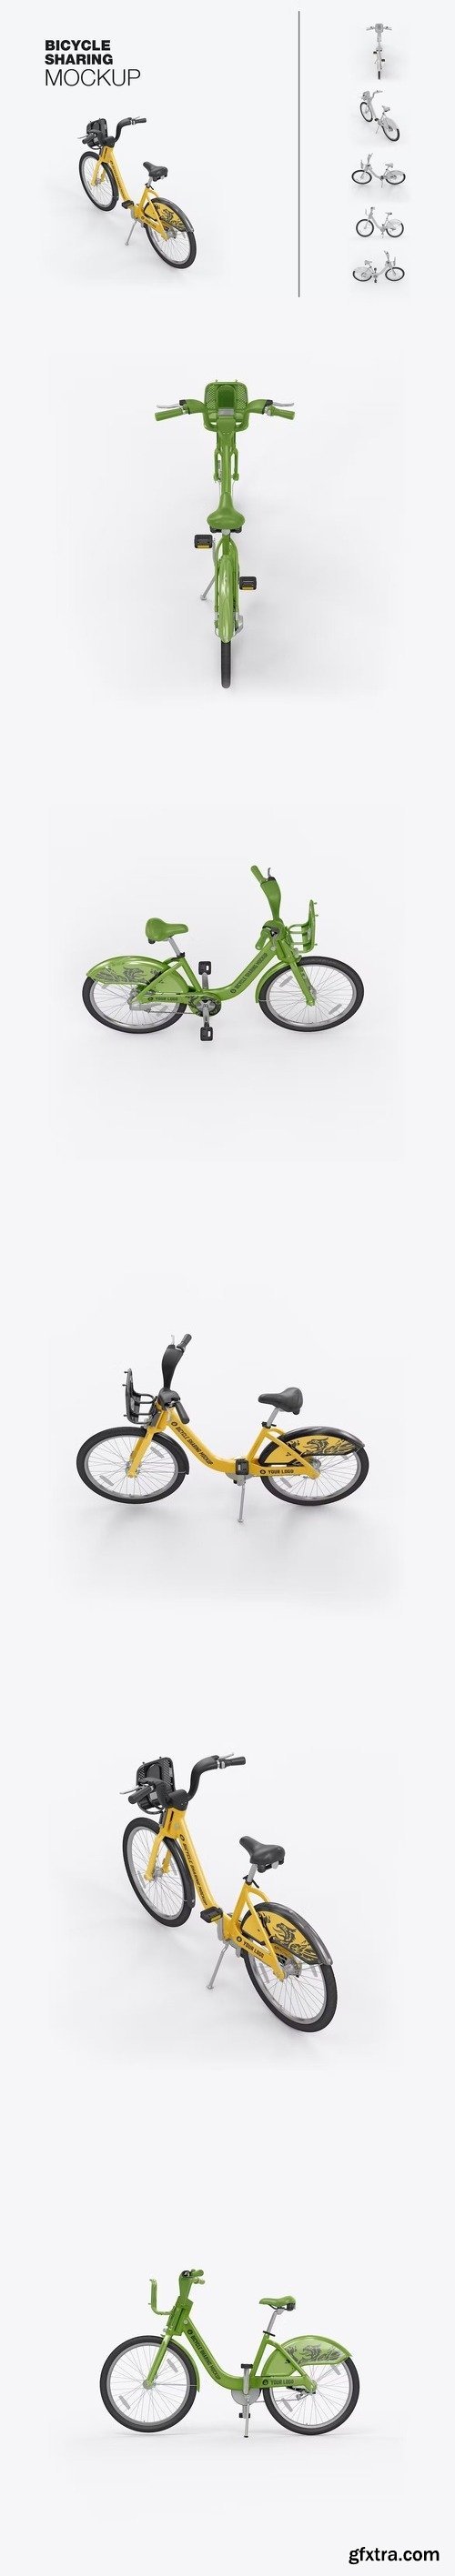 City bicycle sharing mockup